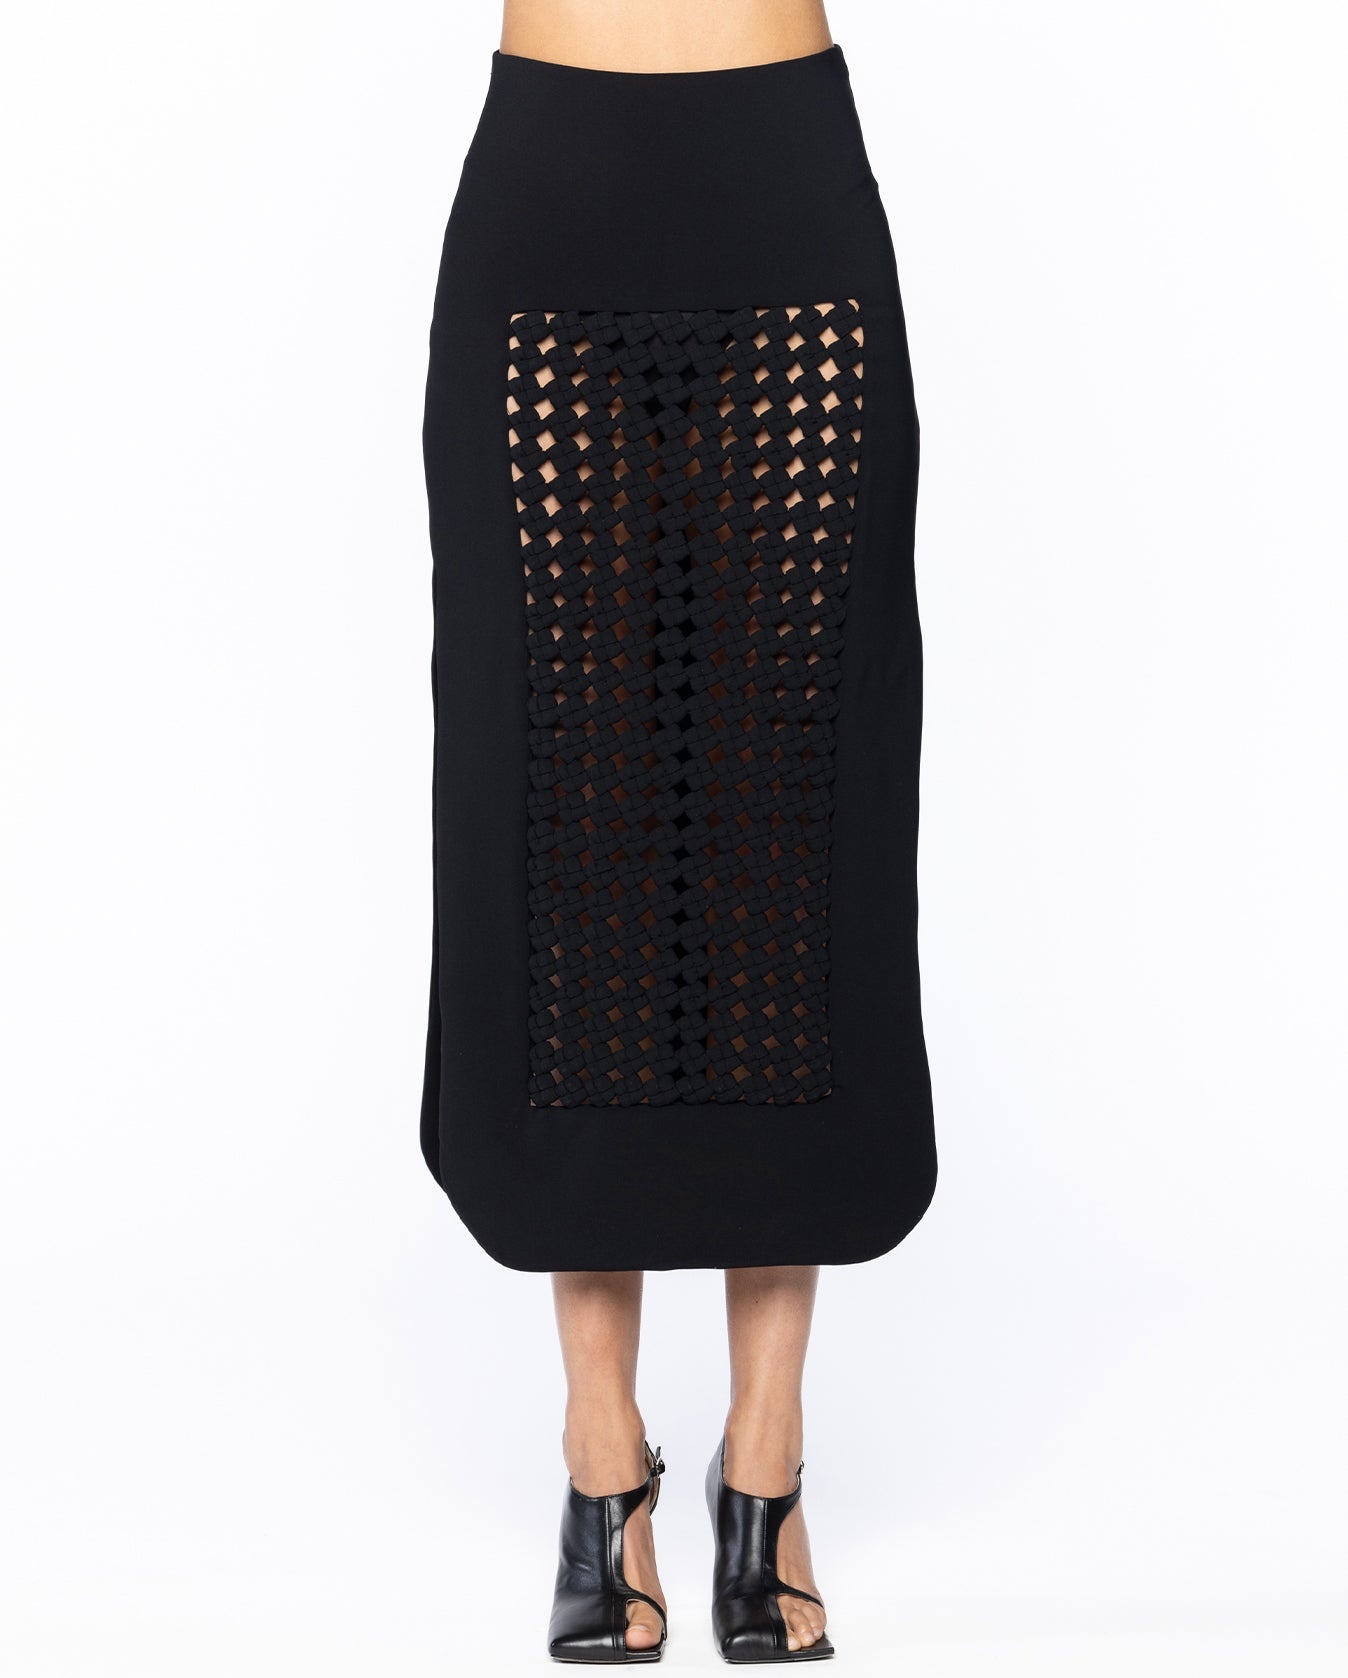 Maxi Skirt With Weaved Frame Insert - 2